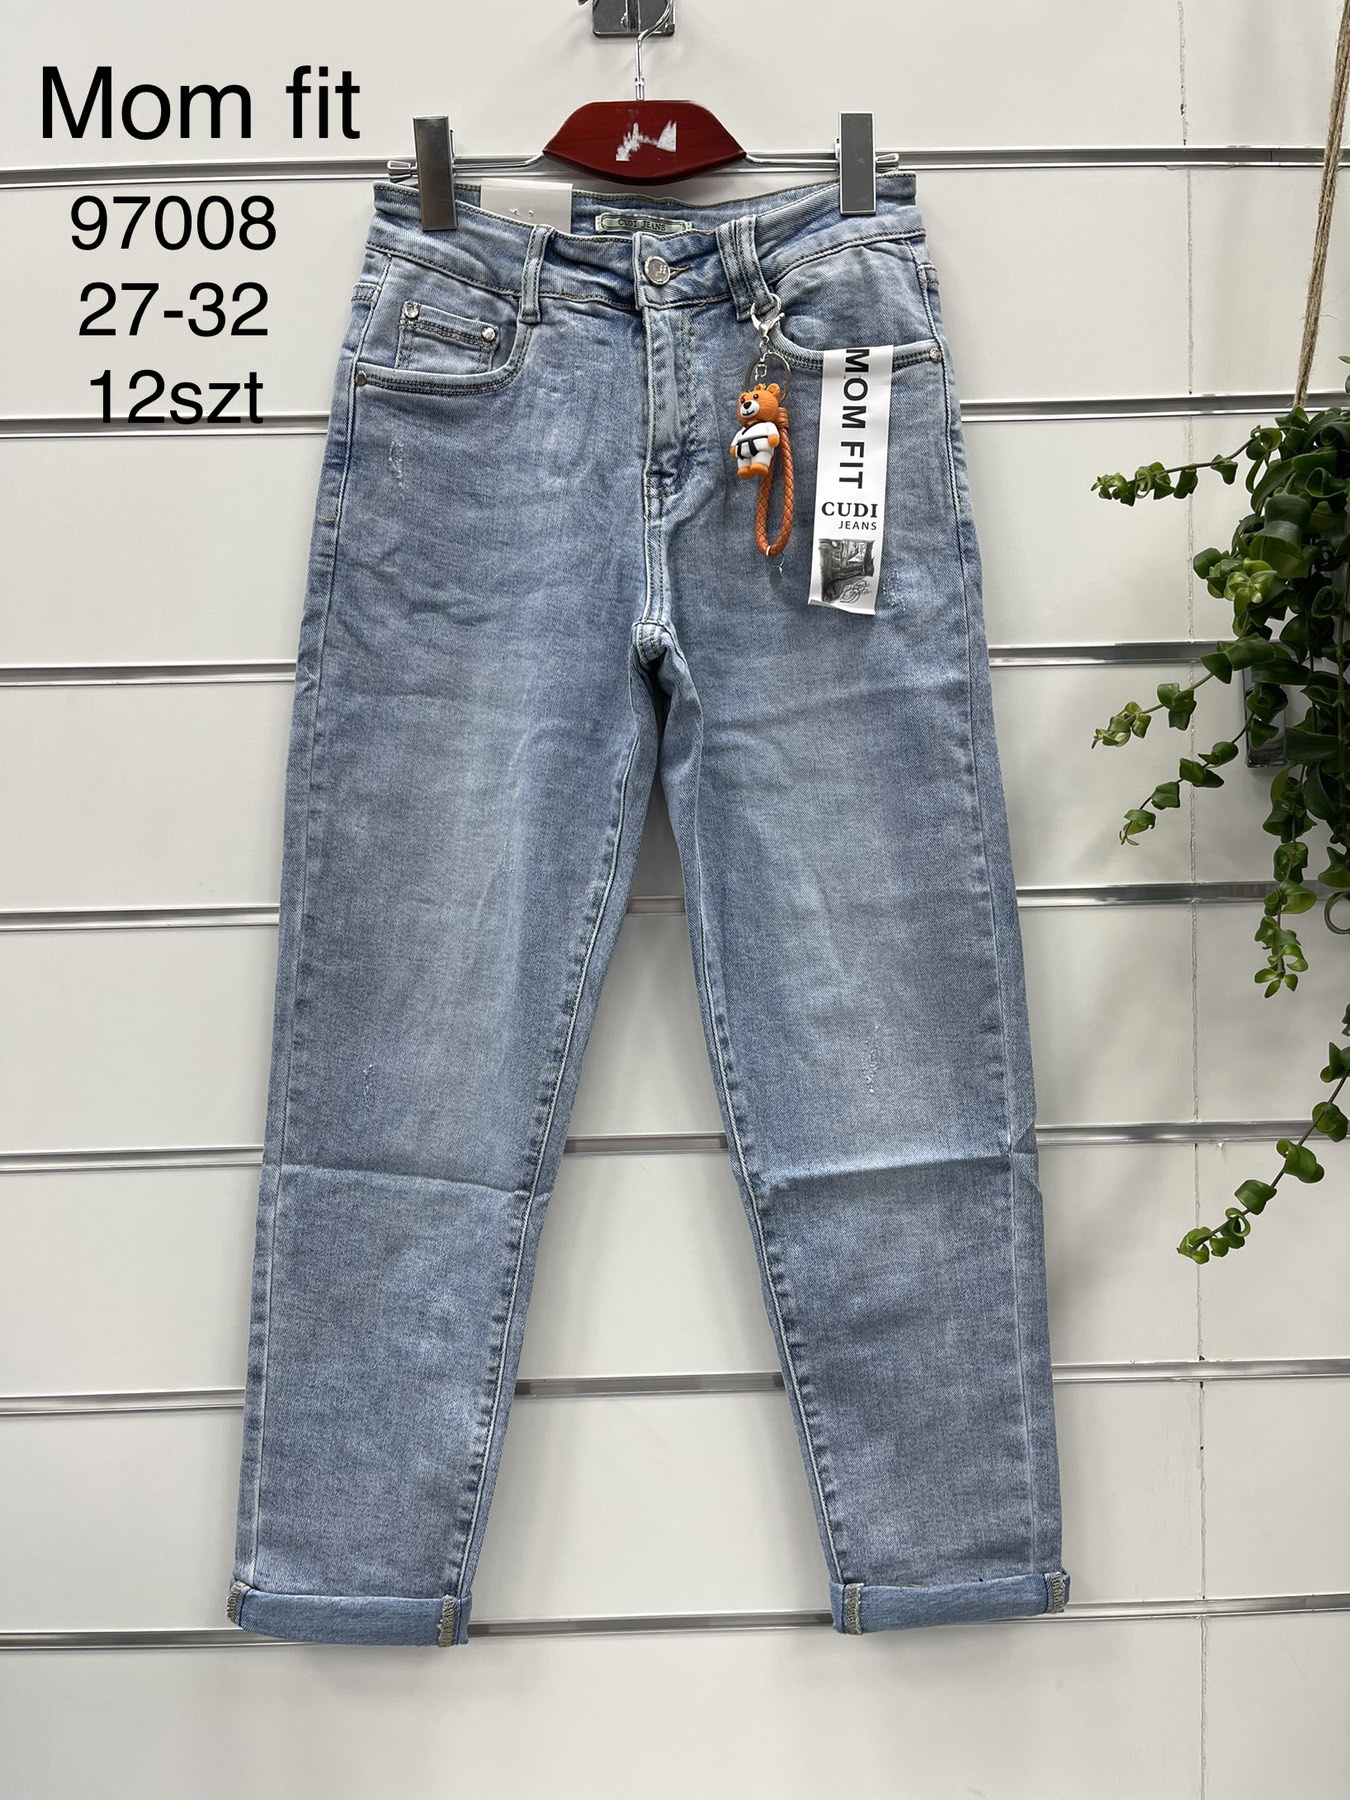 Spodnie  damskie jeans Roz 27-32.  1 kolor . Paczka 12szt